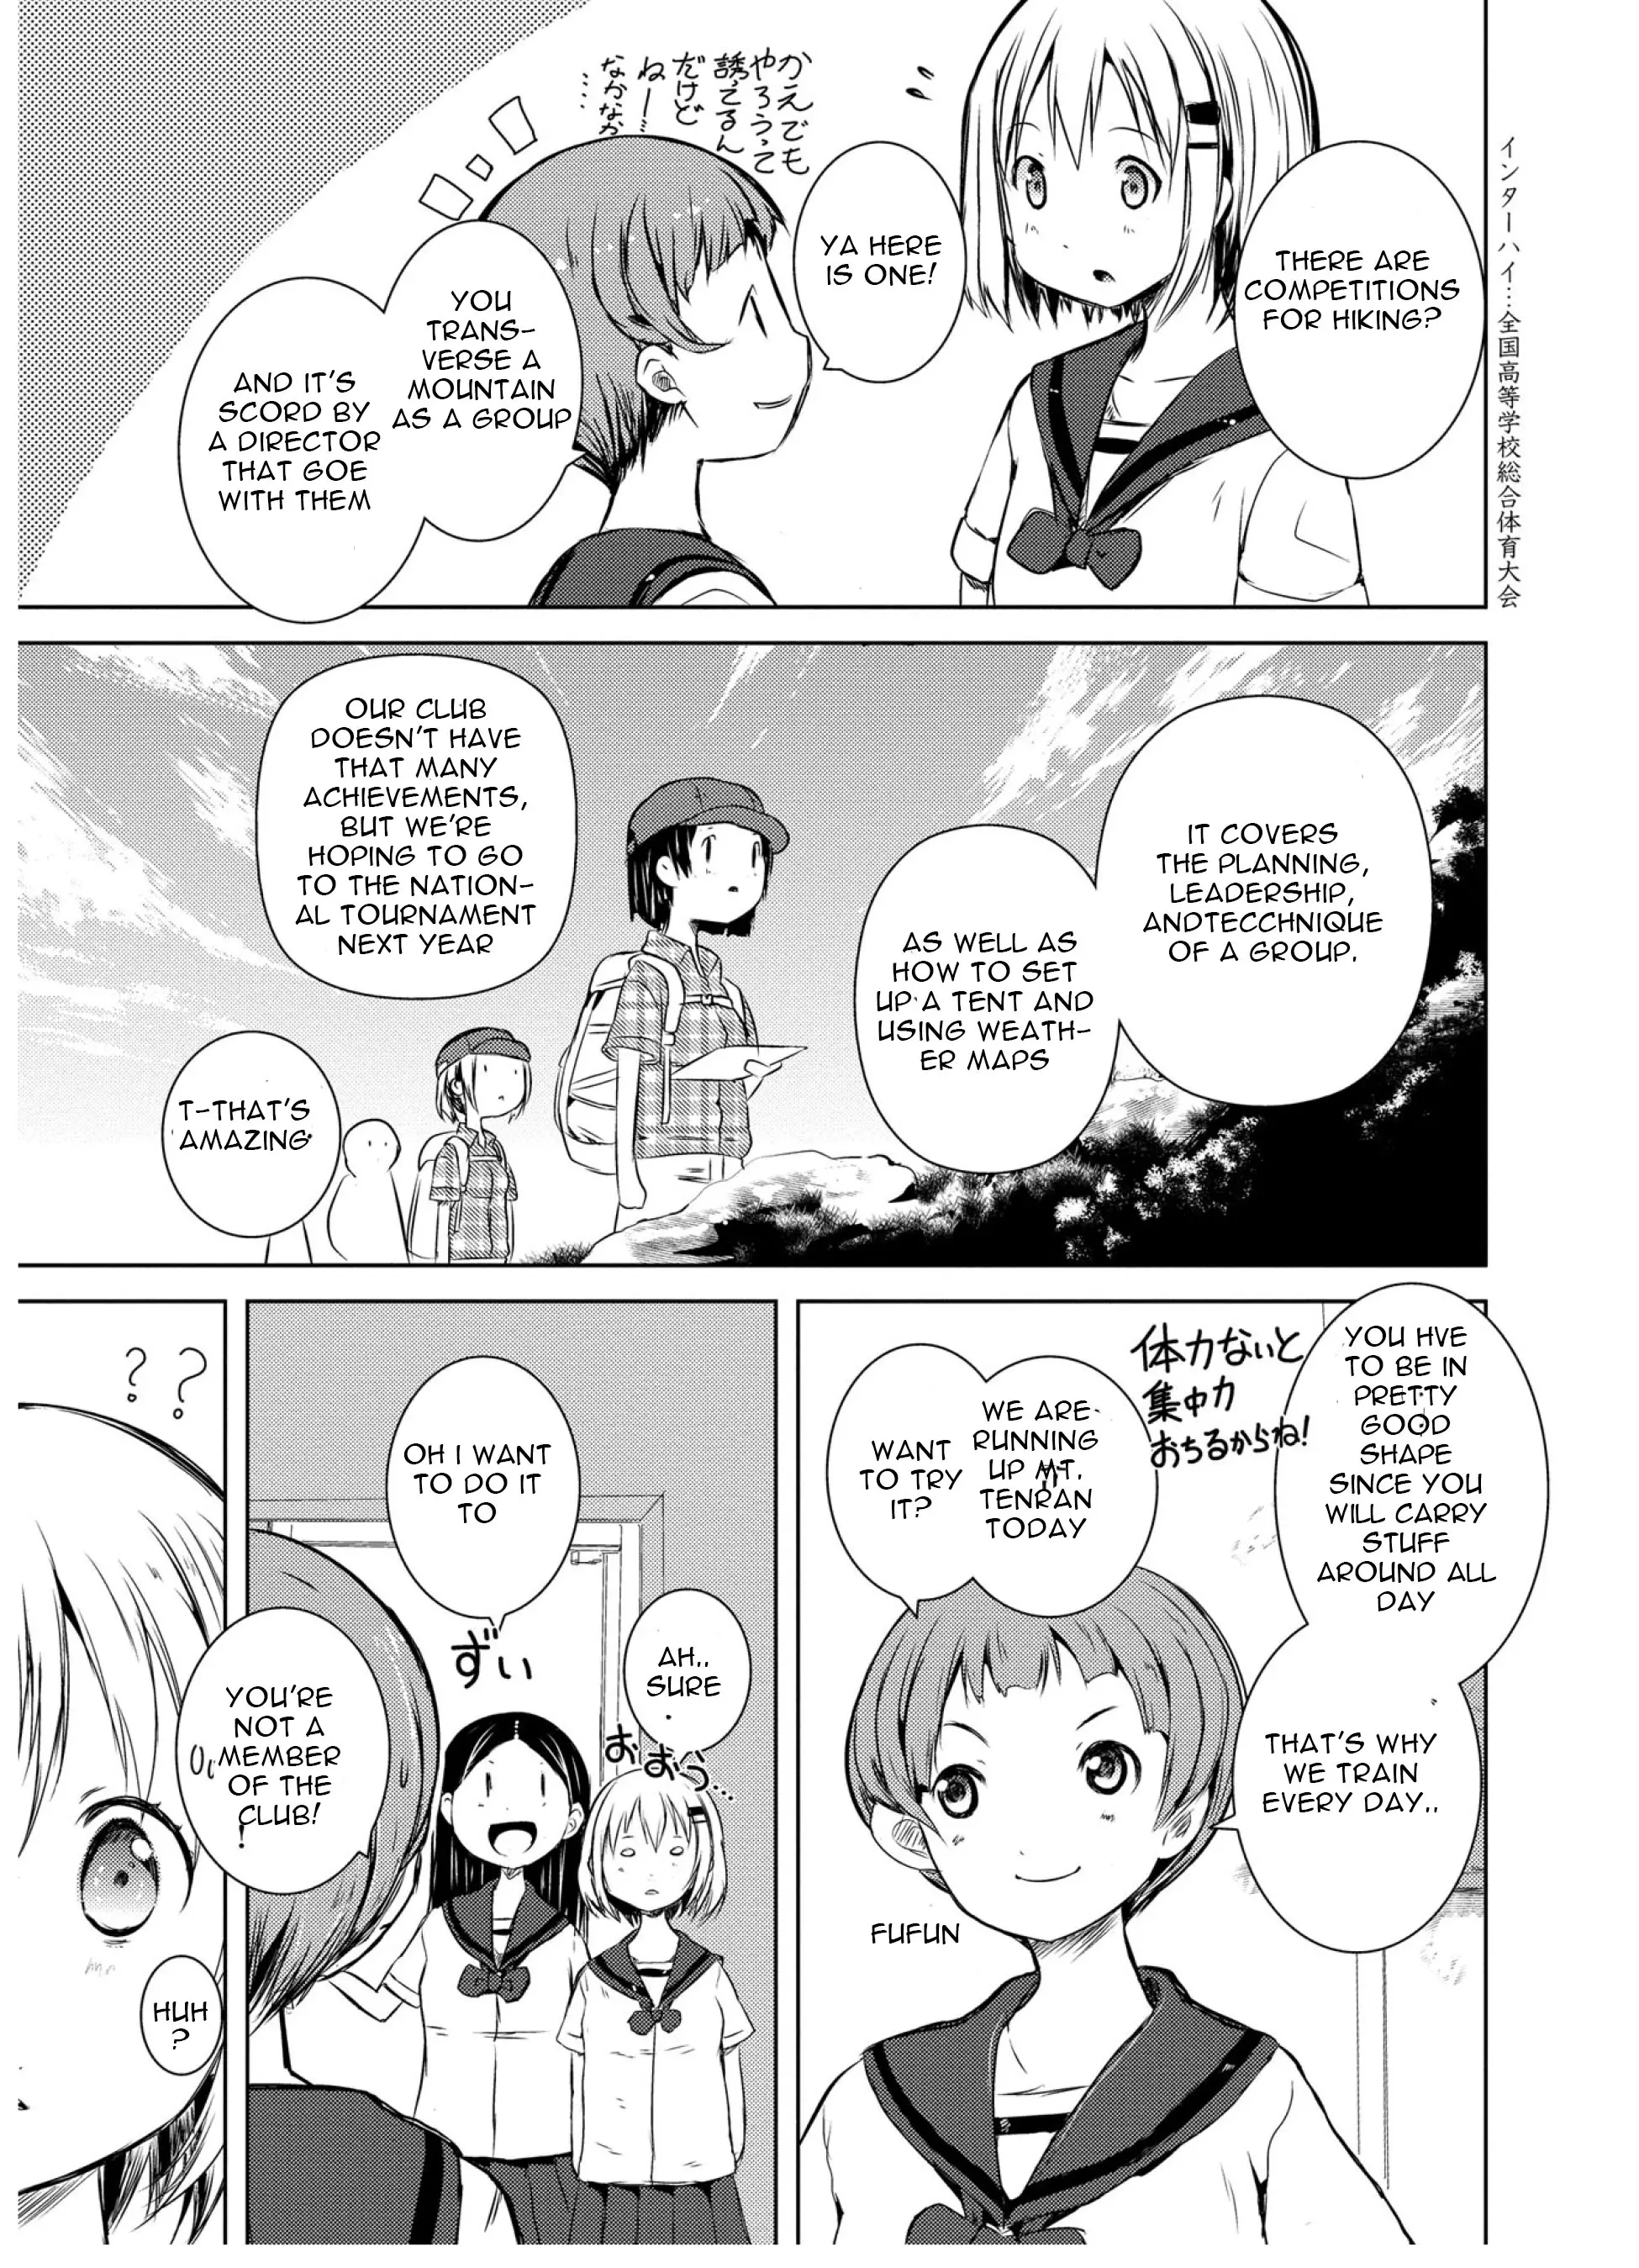 Yama No Susume - 46 page 10